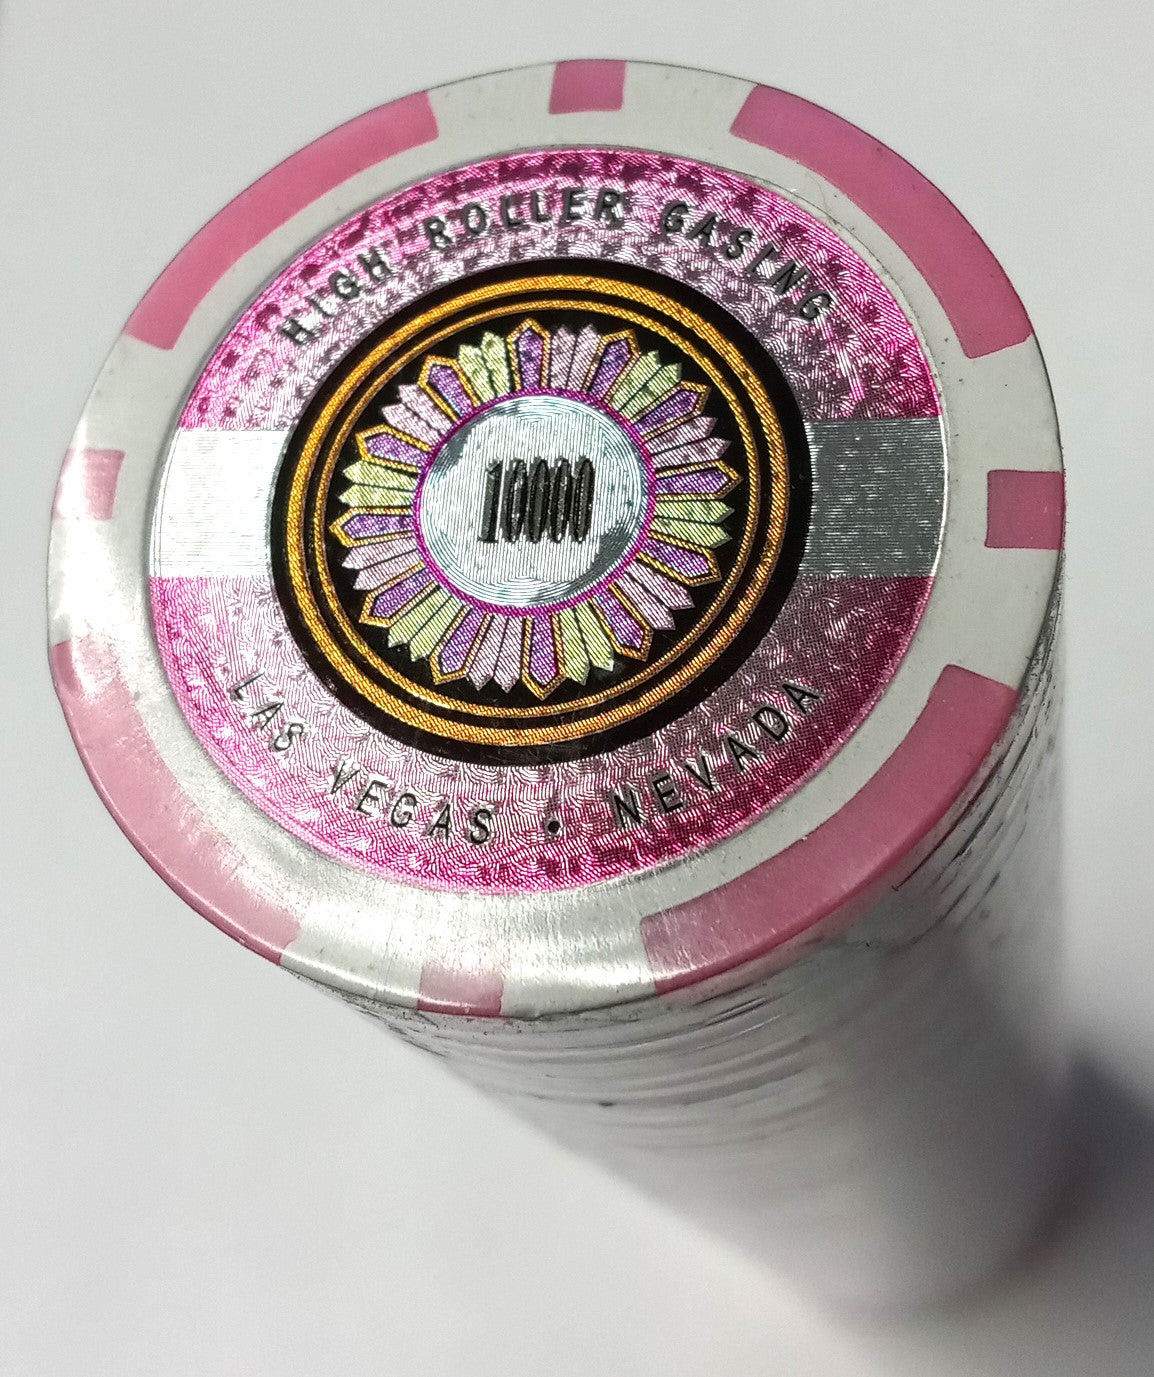 Pink $10,000 High Roller Las Vegas Poker Chips 50pcs